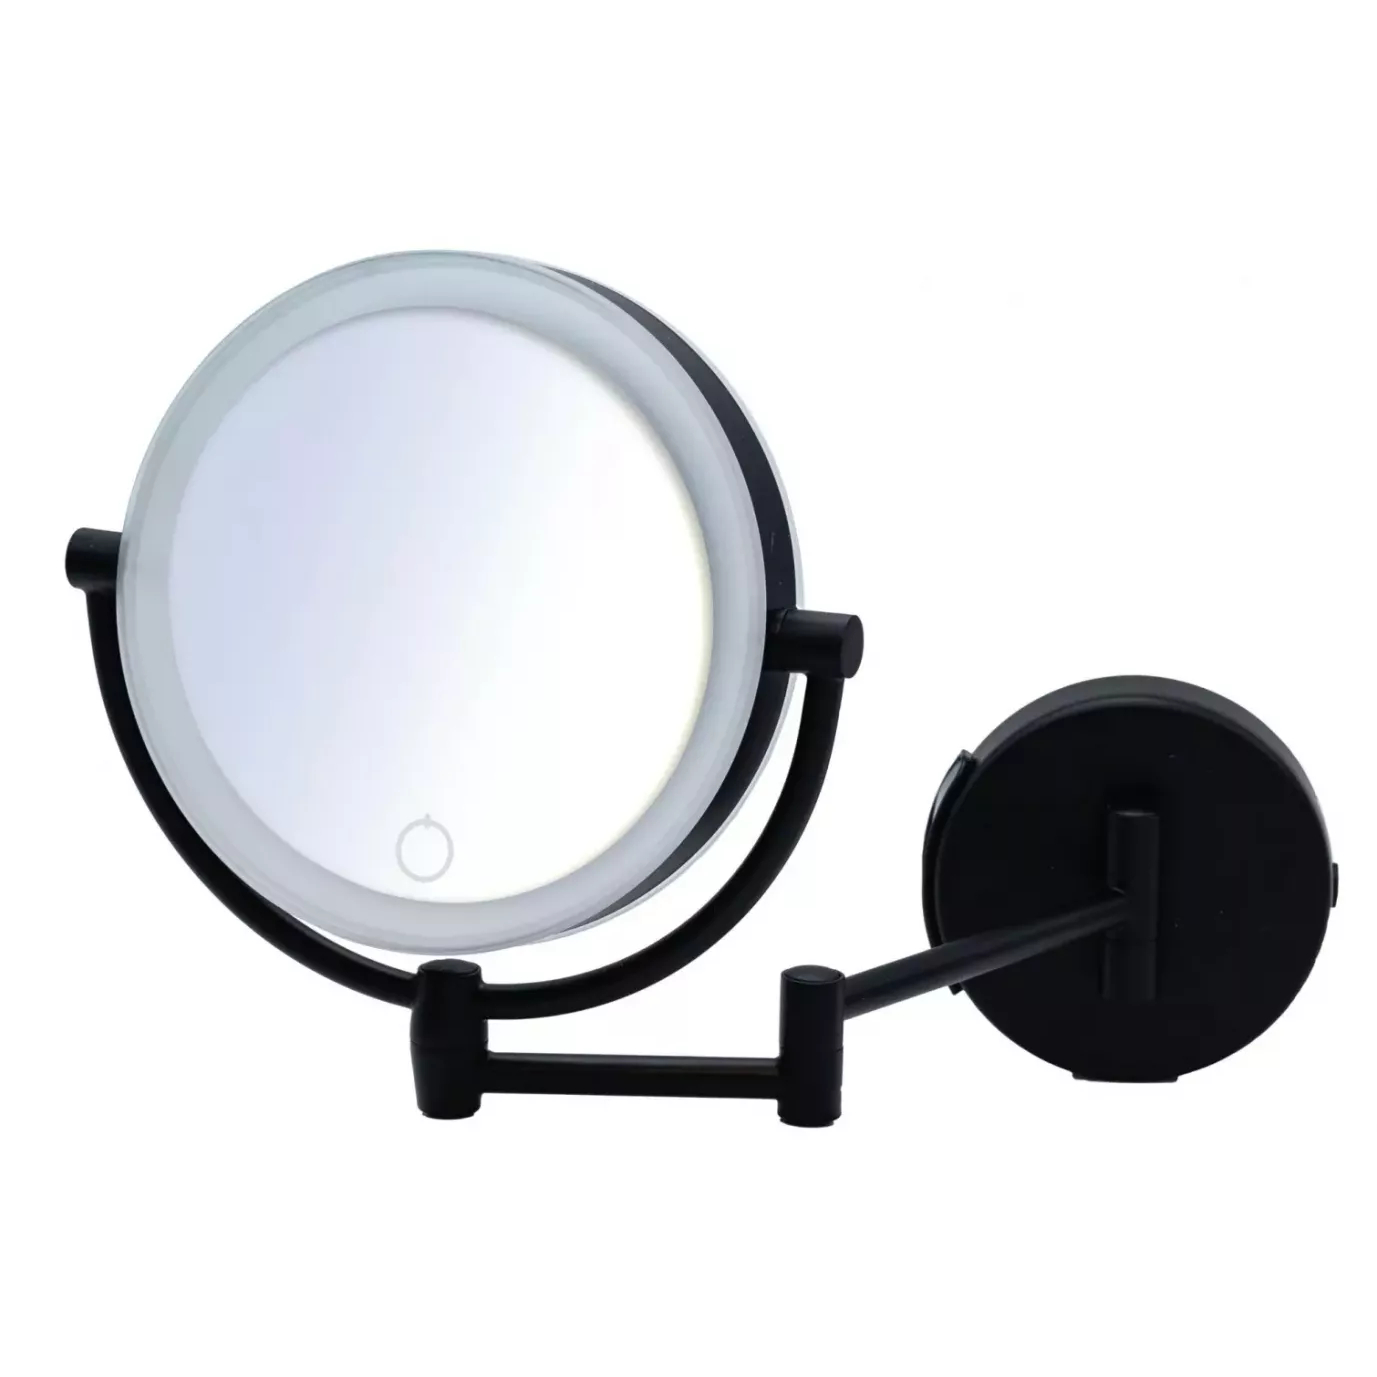 зеркало косметическое ridder shuri с подсветкой 1x 5x увеличение черный Зеркало косметическое Ridder Shuri с подсветкой, 1x/5x увеличение, черный